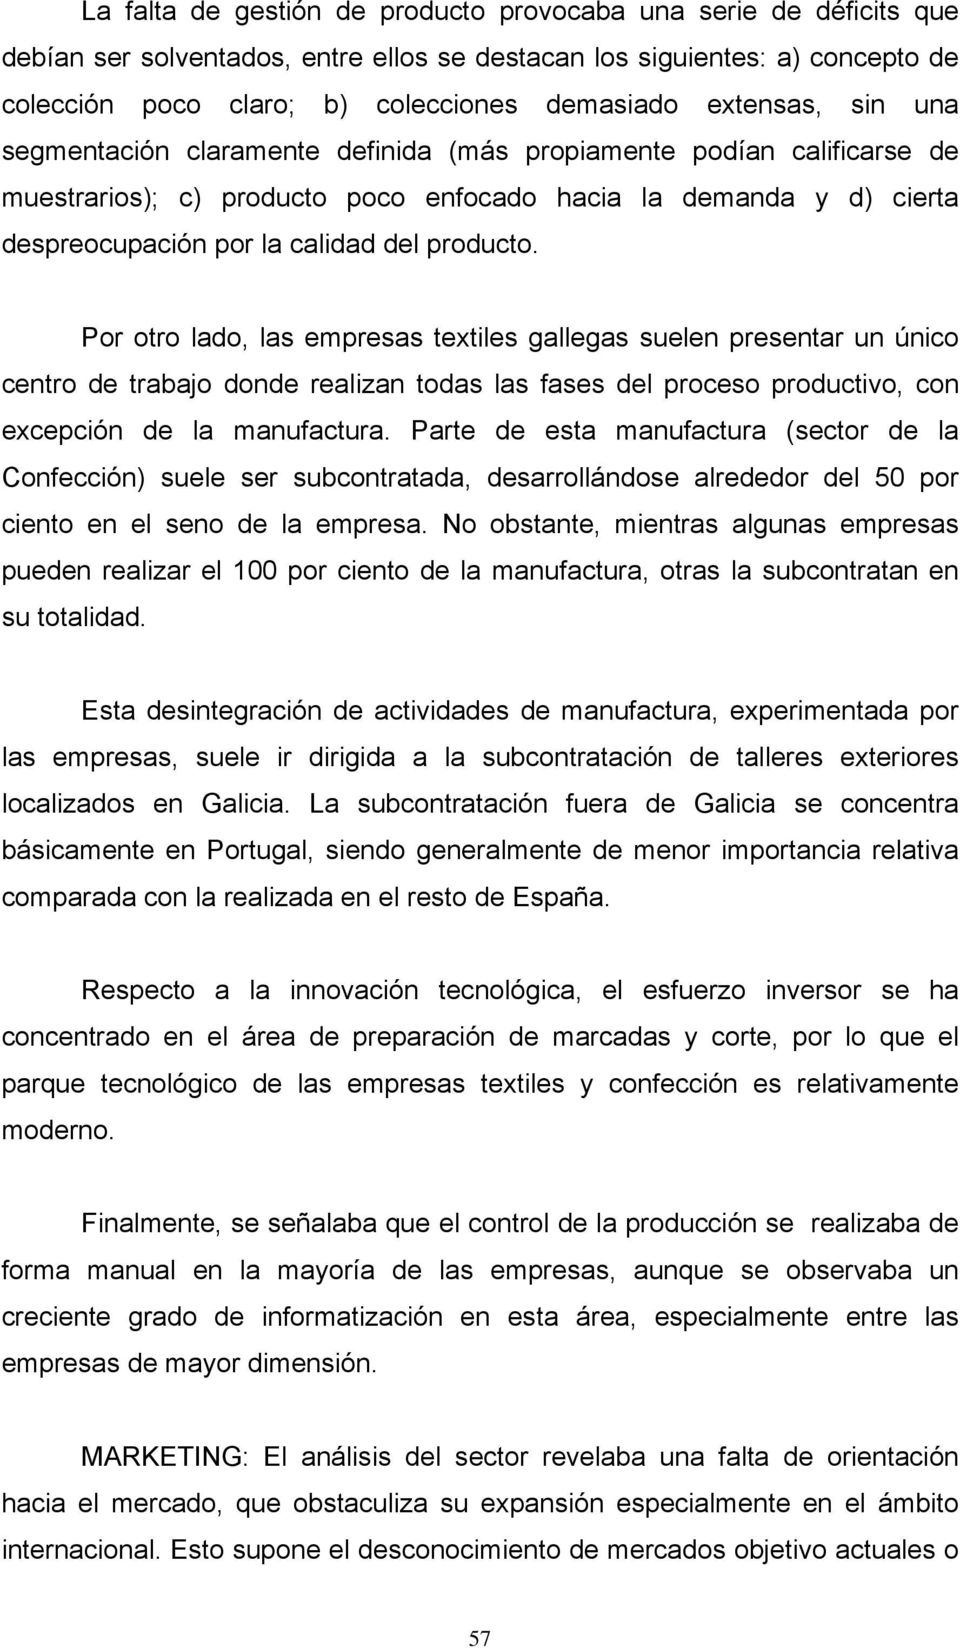 producto. Por otro lado, las empresas textiles gallegas suelen presentar un único centro de trabajo donde realizan todas las fases del proceso productivo, con excepción de la manufactura.